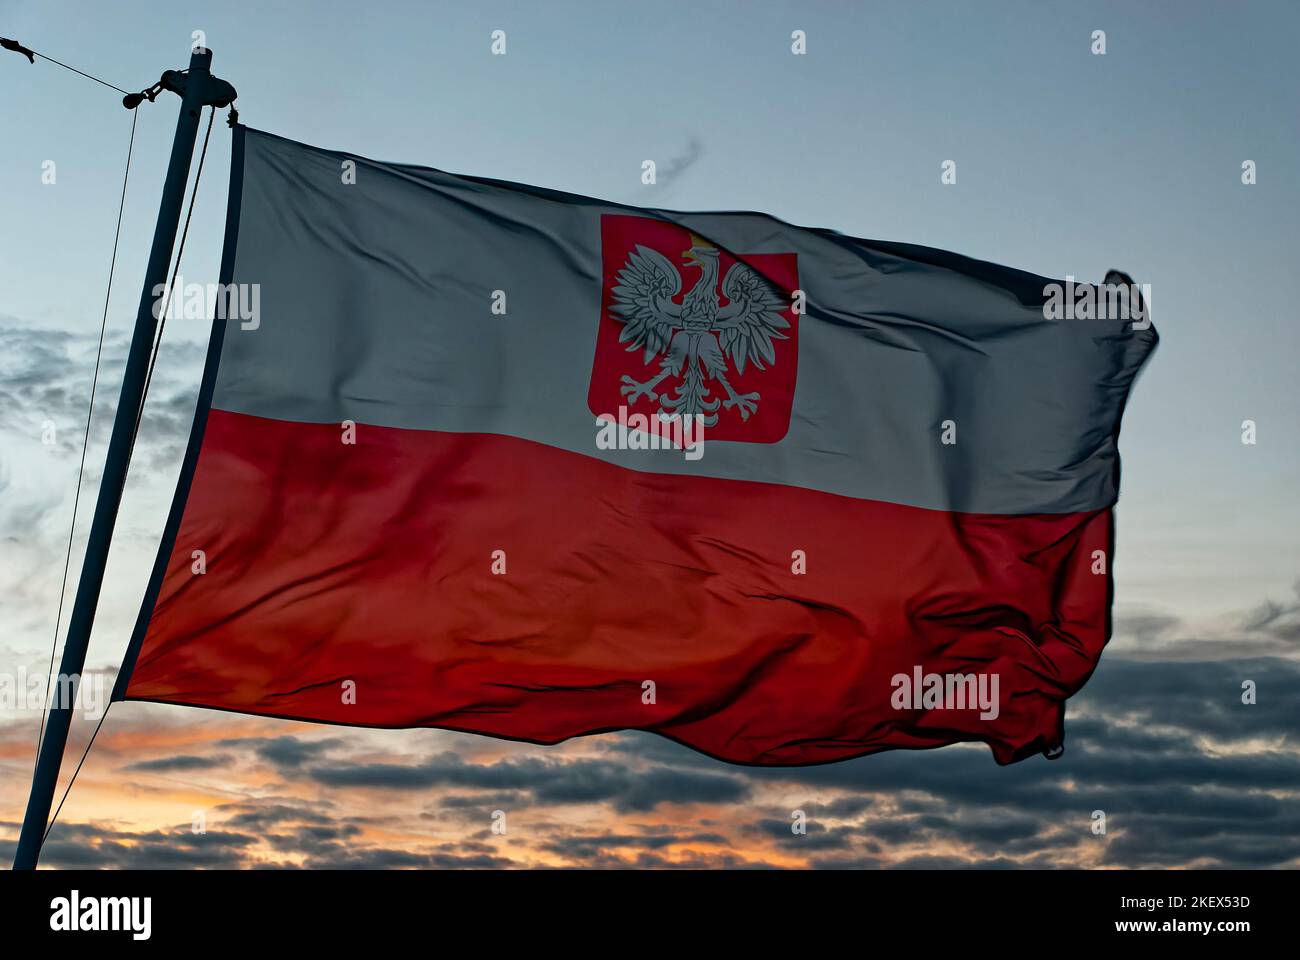 Drapeau maritime de la Pologne, drapeau maritime polonais, drapeau polonais dans le vent, ciel du soir. Le drapeau actuellement valide dans la navigation civile. Banque D'Images